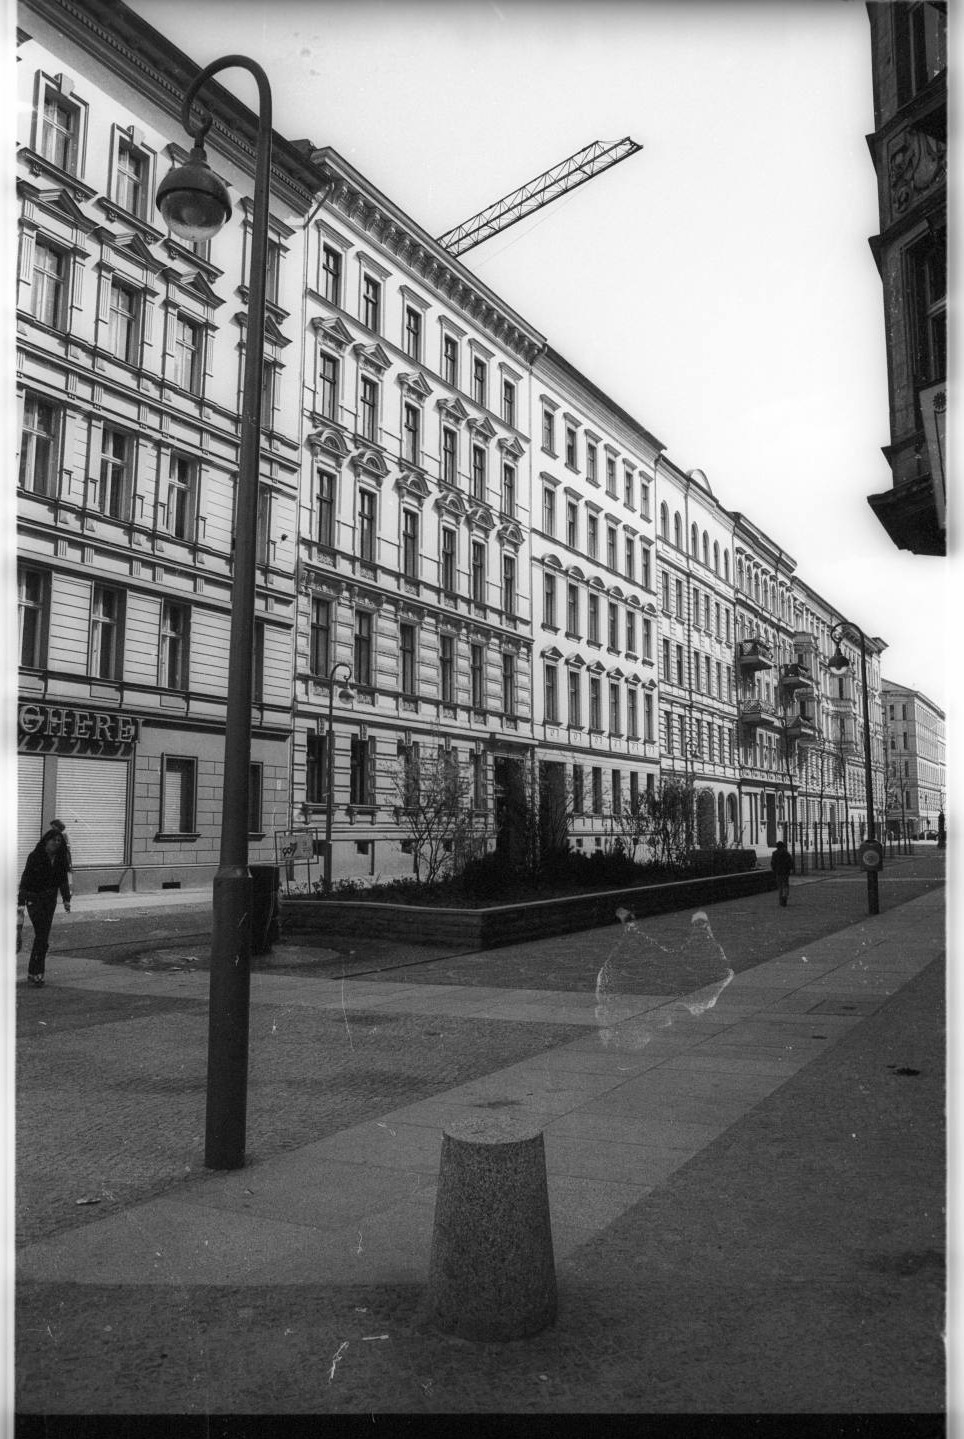 Kleinbildnegative: Fußgängerzone Nollendorfstraße, 1981 (Museen Tempelhof-Schöneberg/Jürgen Henschel RR-F)